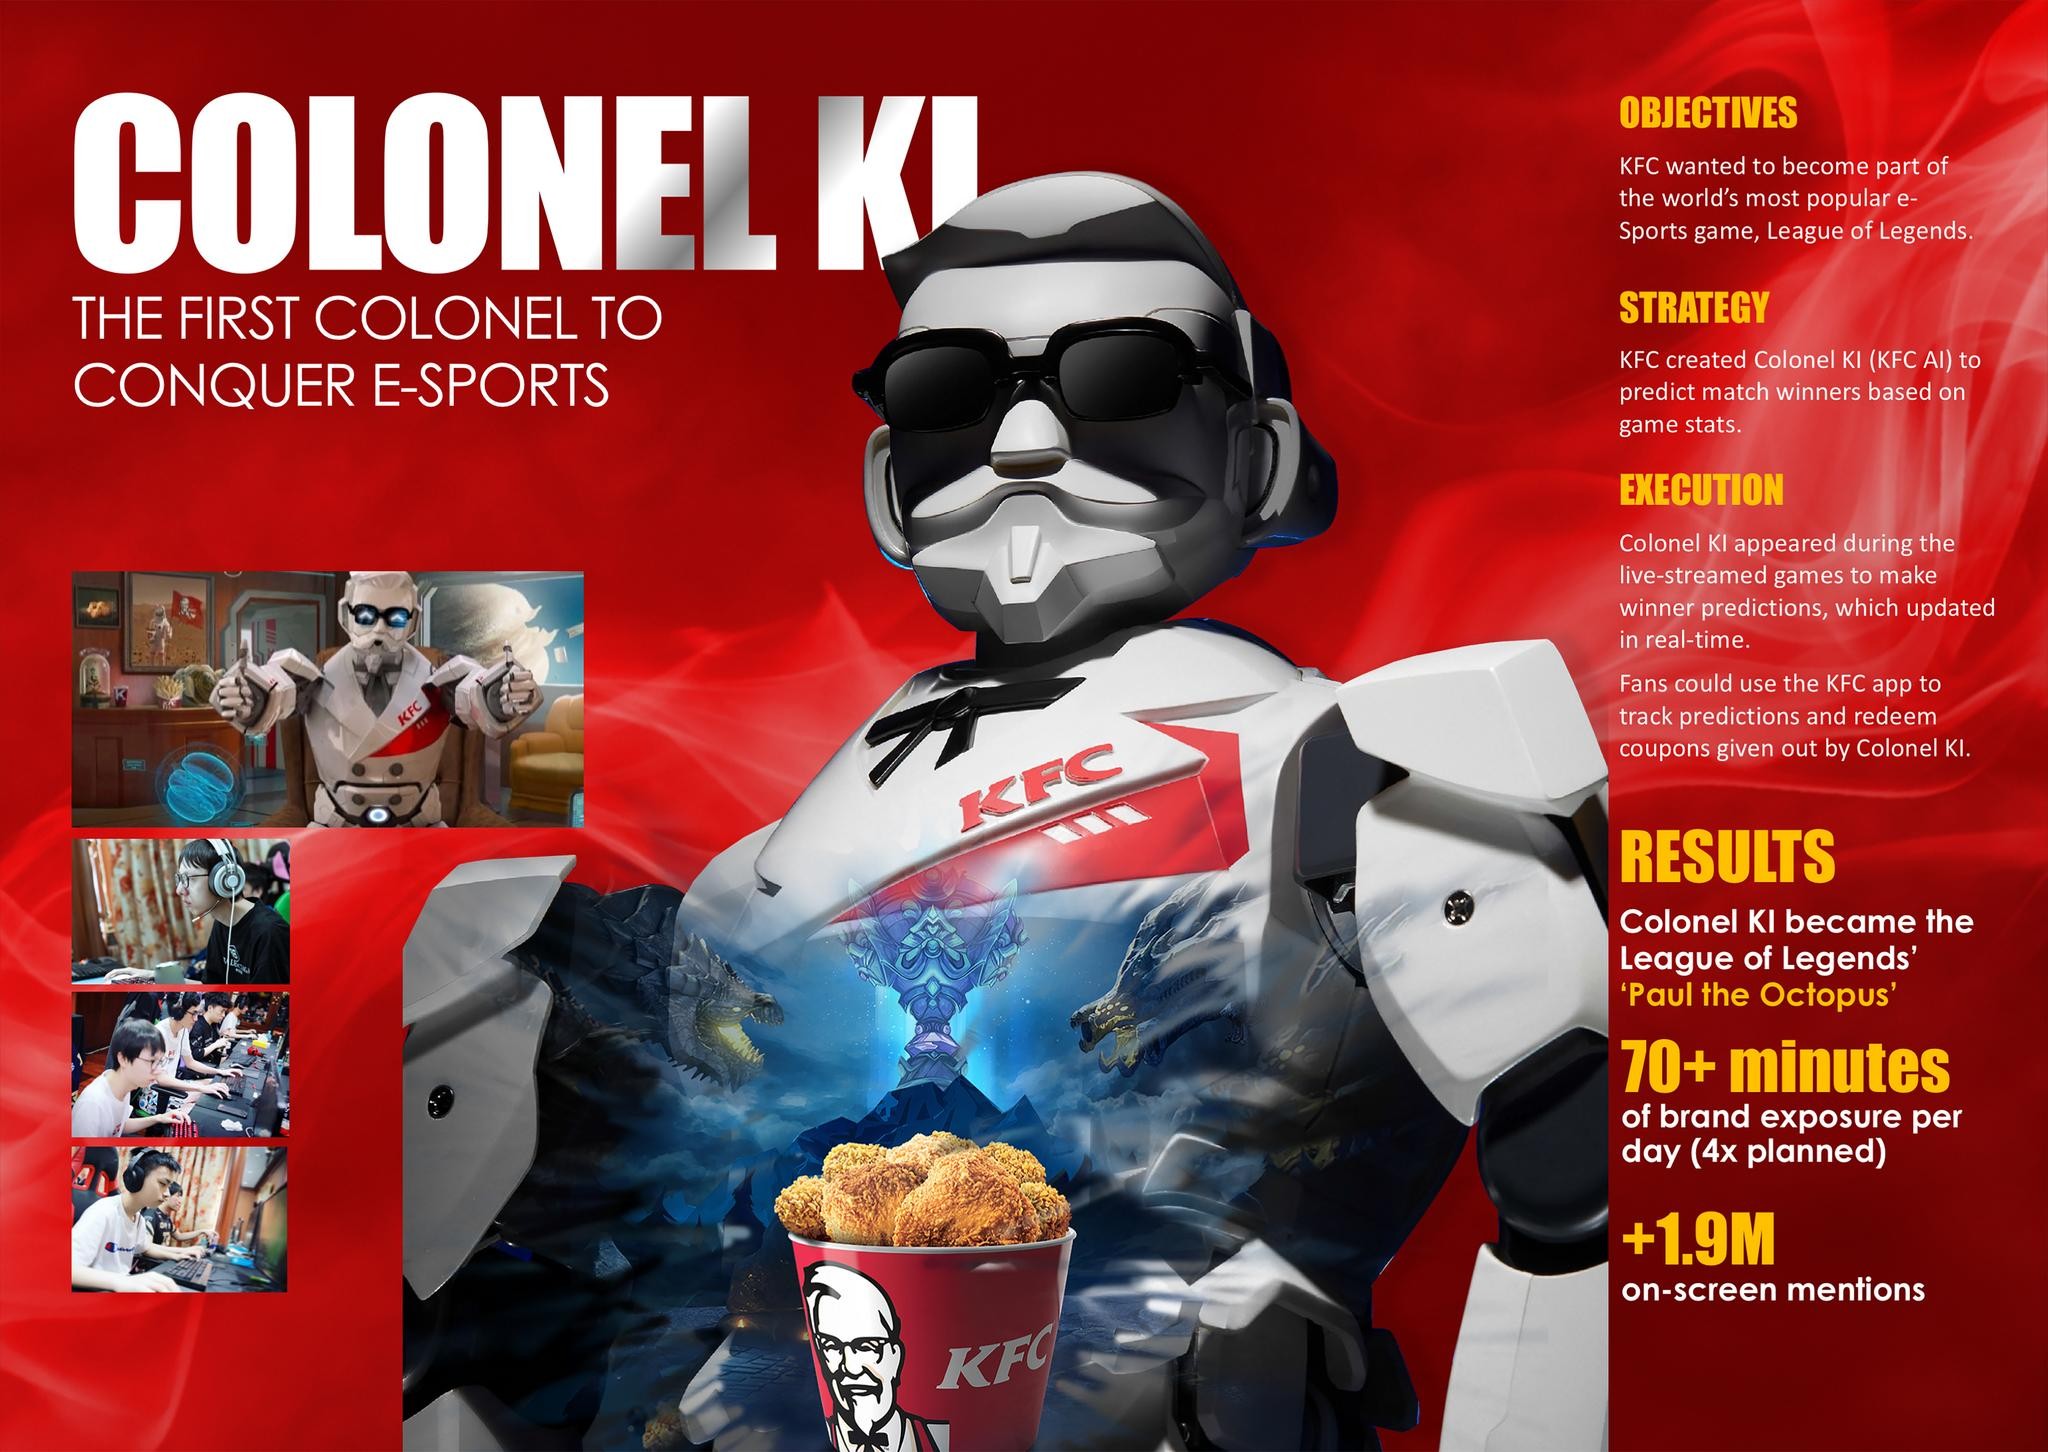 KFC's Colonel KI: The First Colonel to Conquer e-Sports